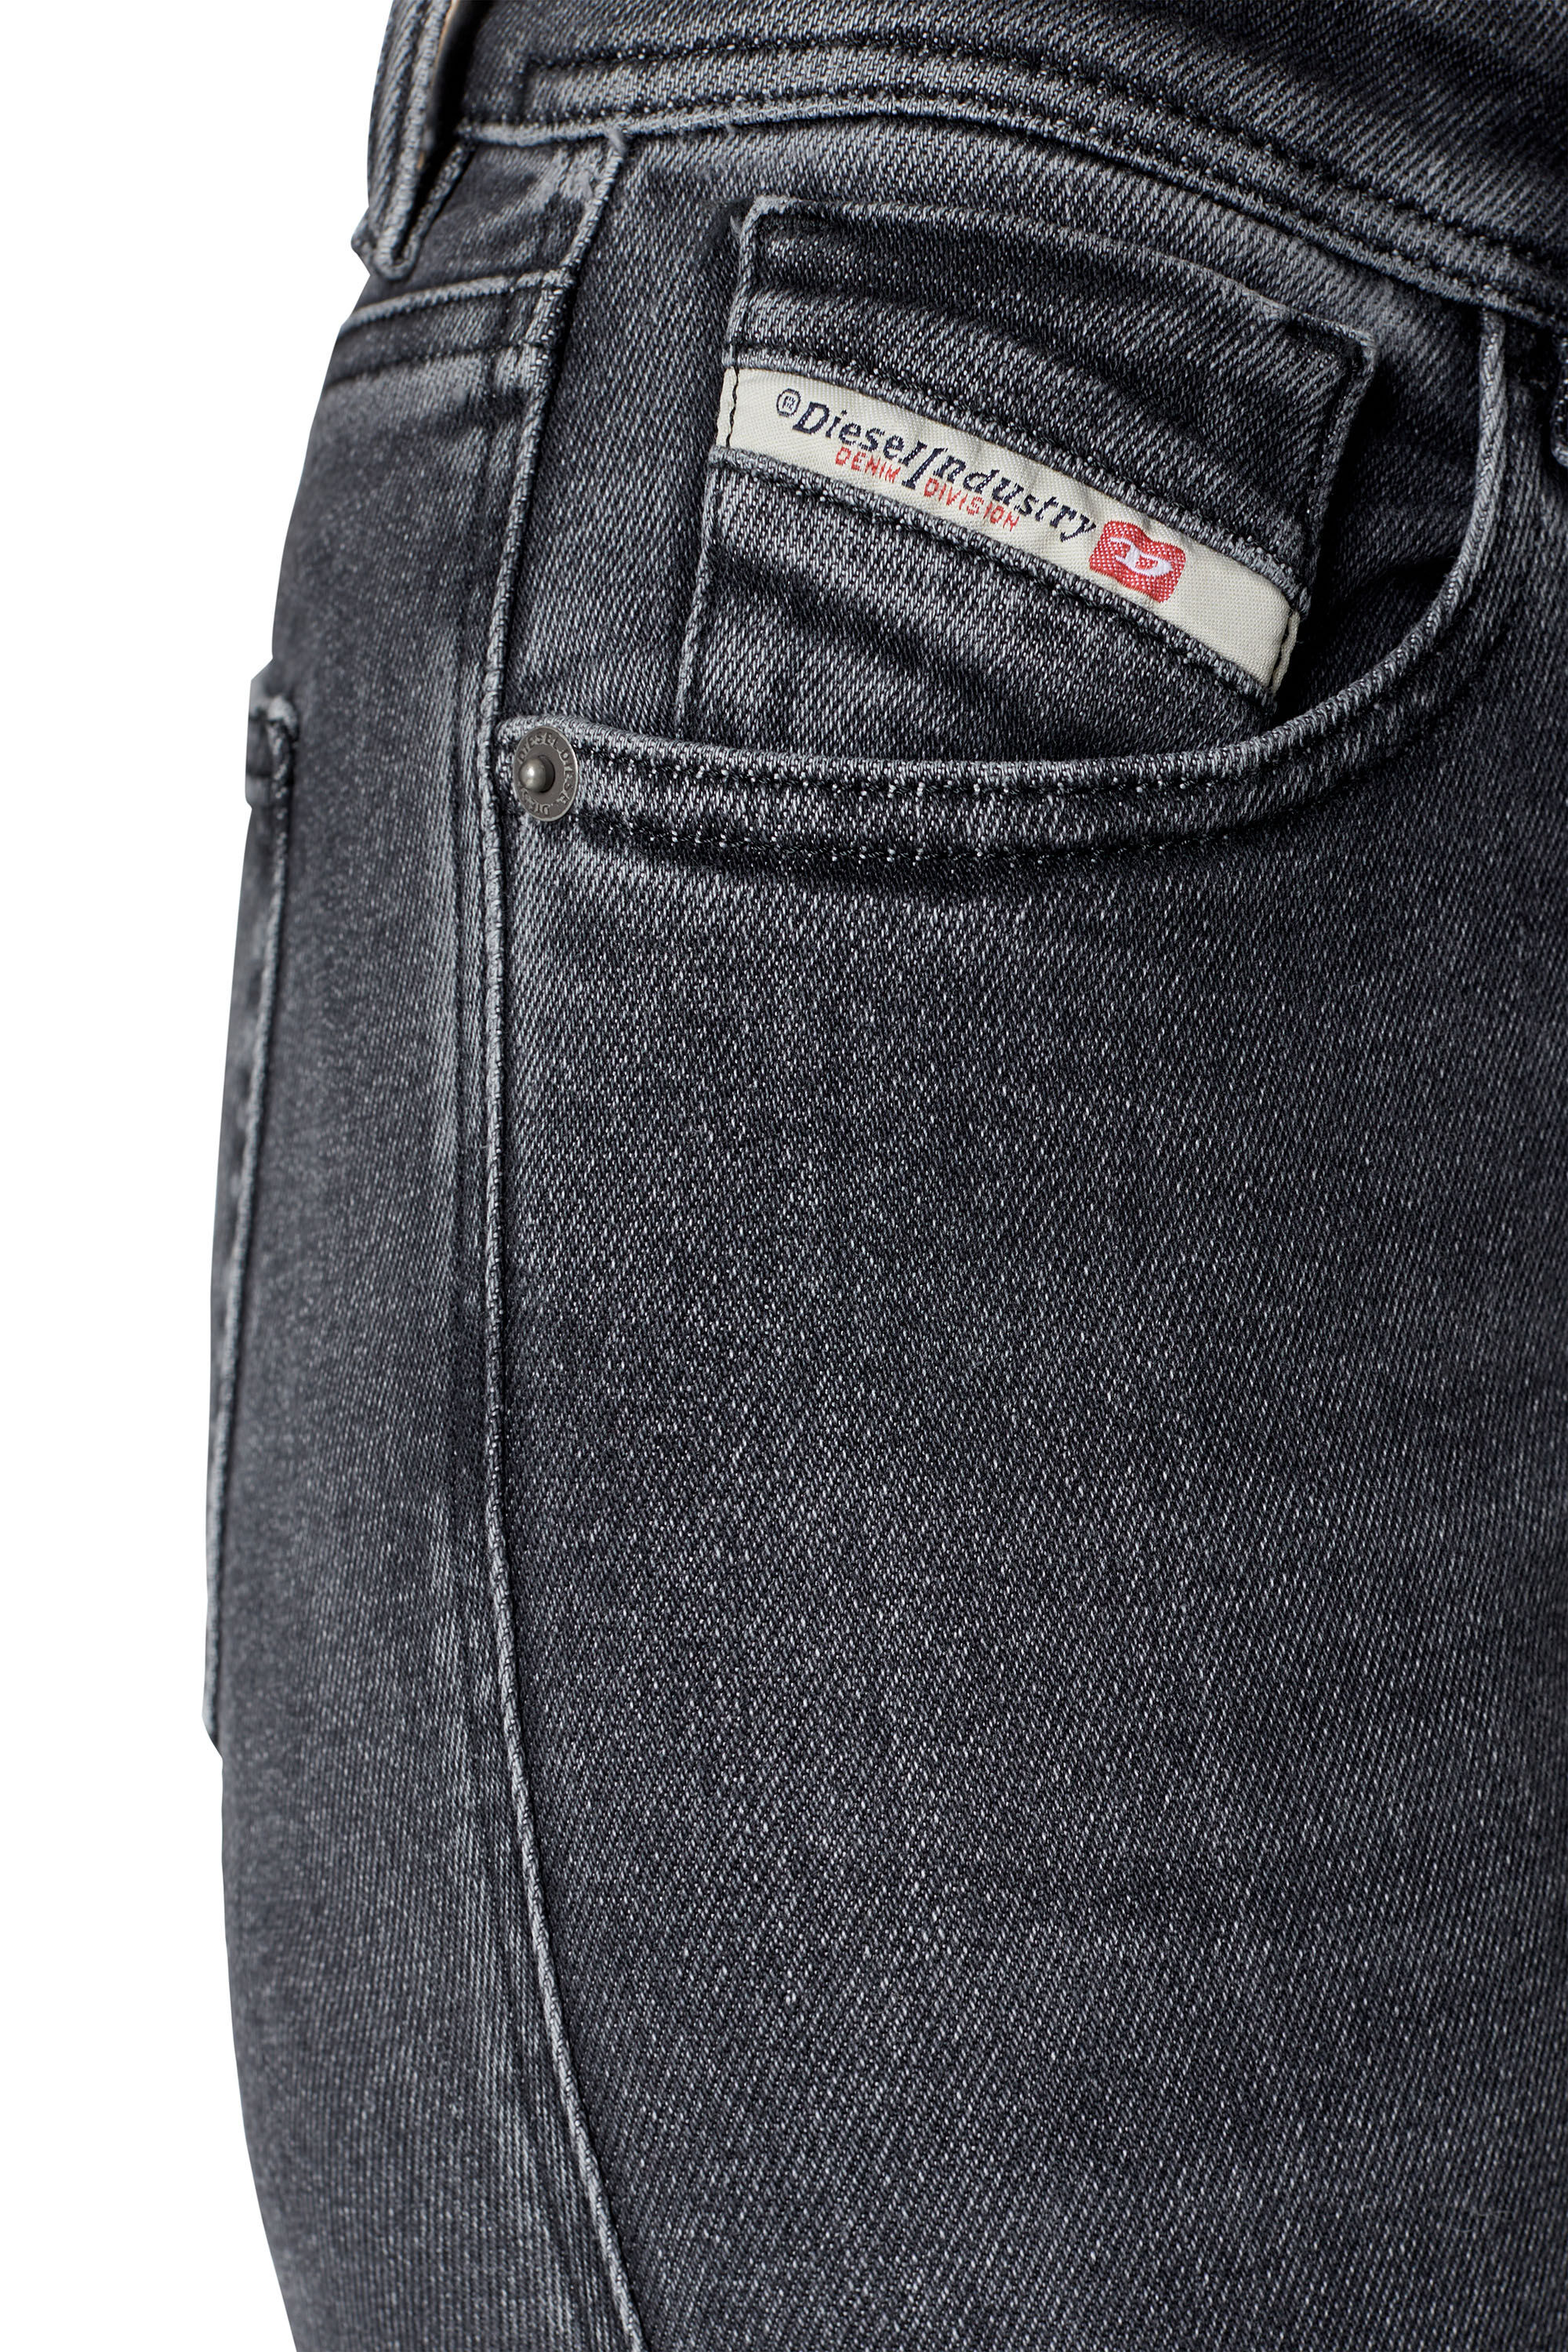 Diesel - Super skinny Jeans 2017 Slandy 09D61, Black/Dark grey - Image 5